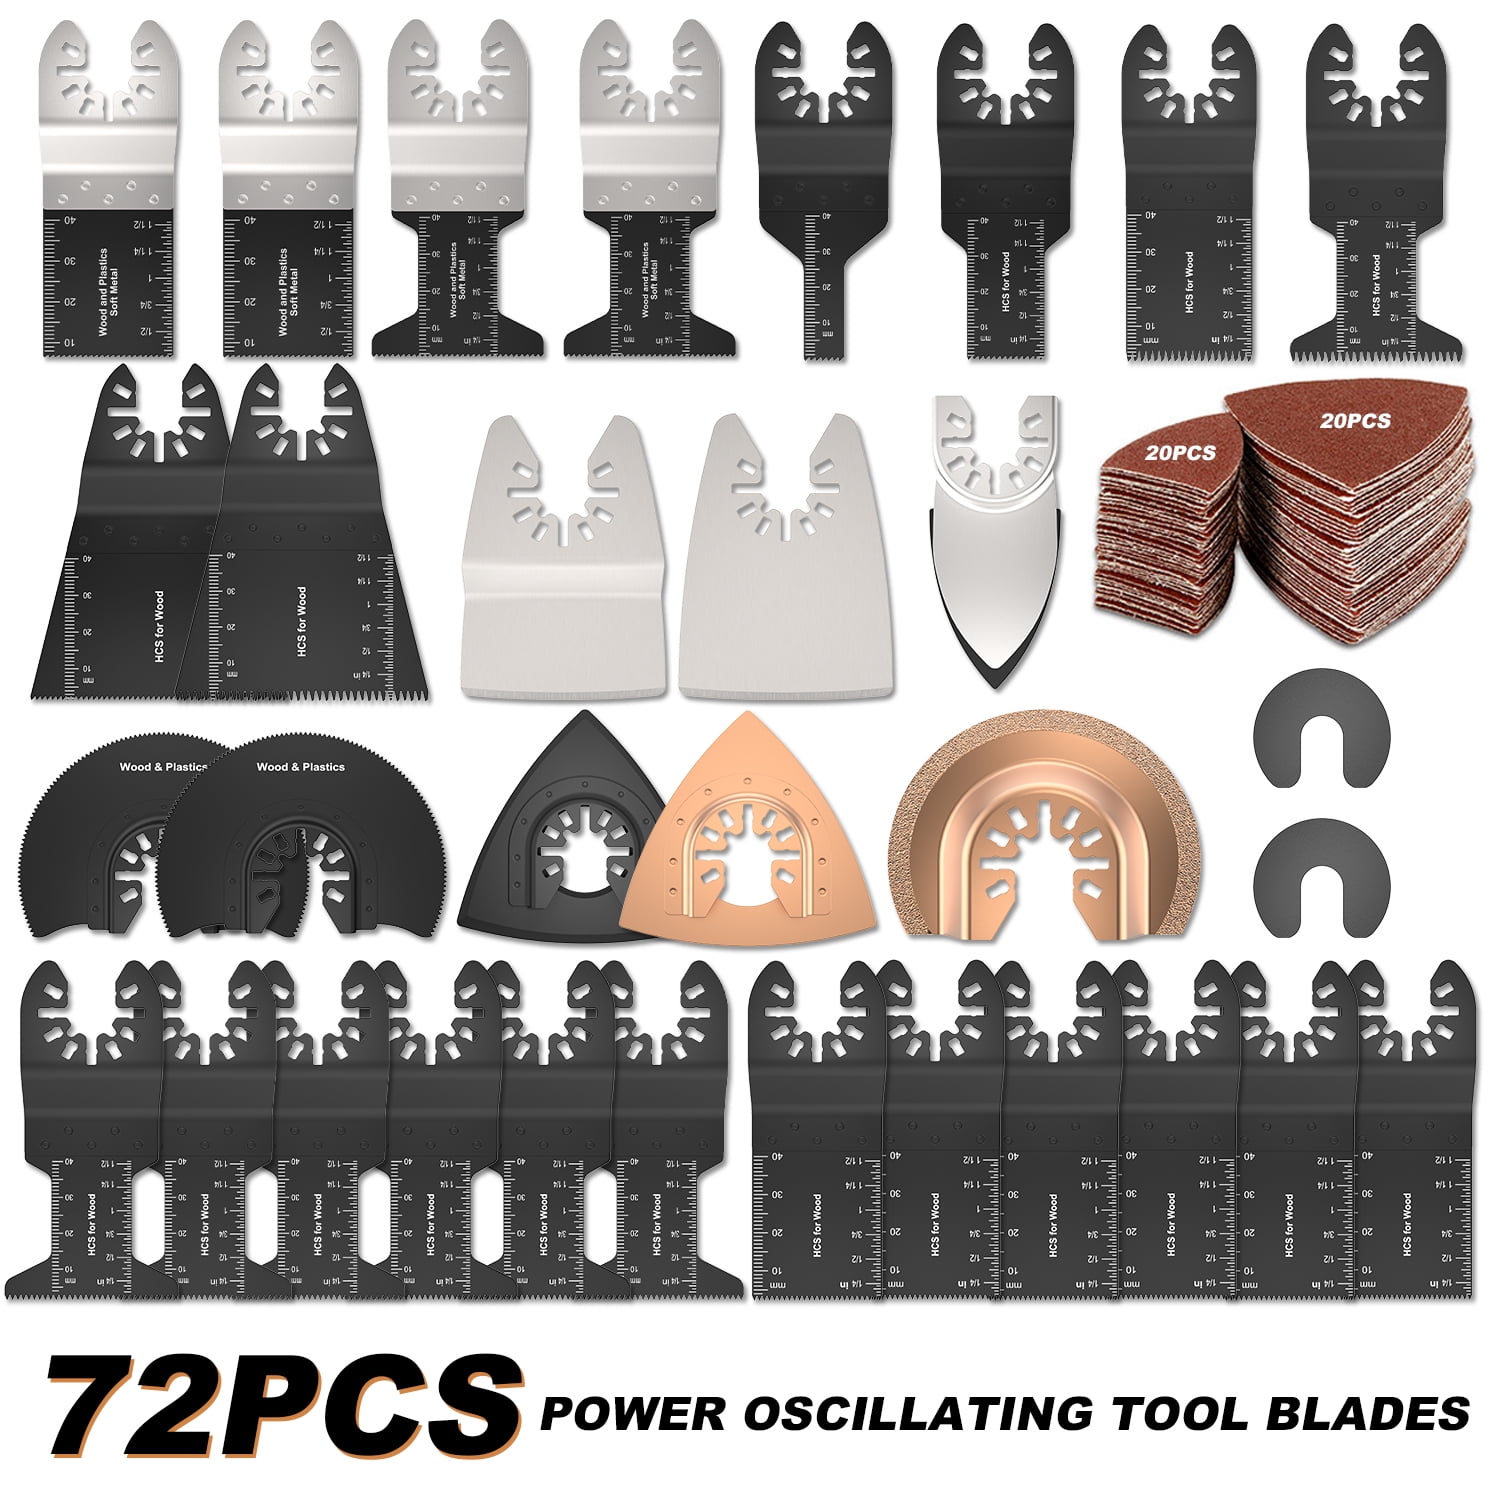 20pcs Oscillating Multi Tool Blades Saw Blade Wood Metal Cutter for Dewalt Fein 